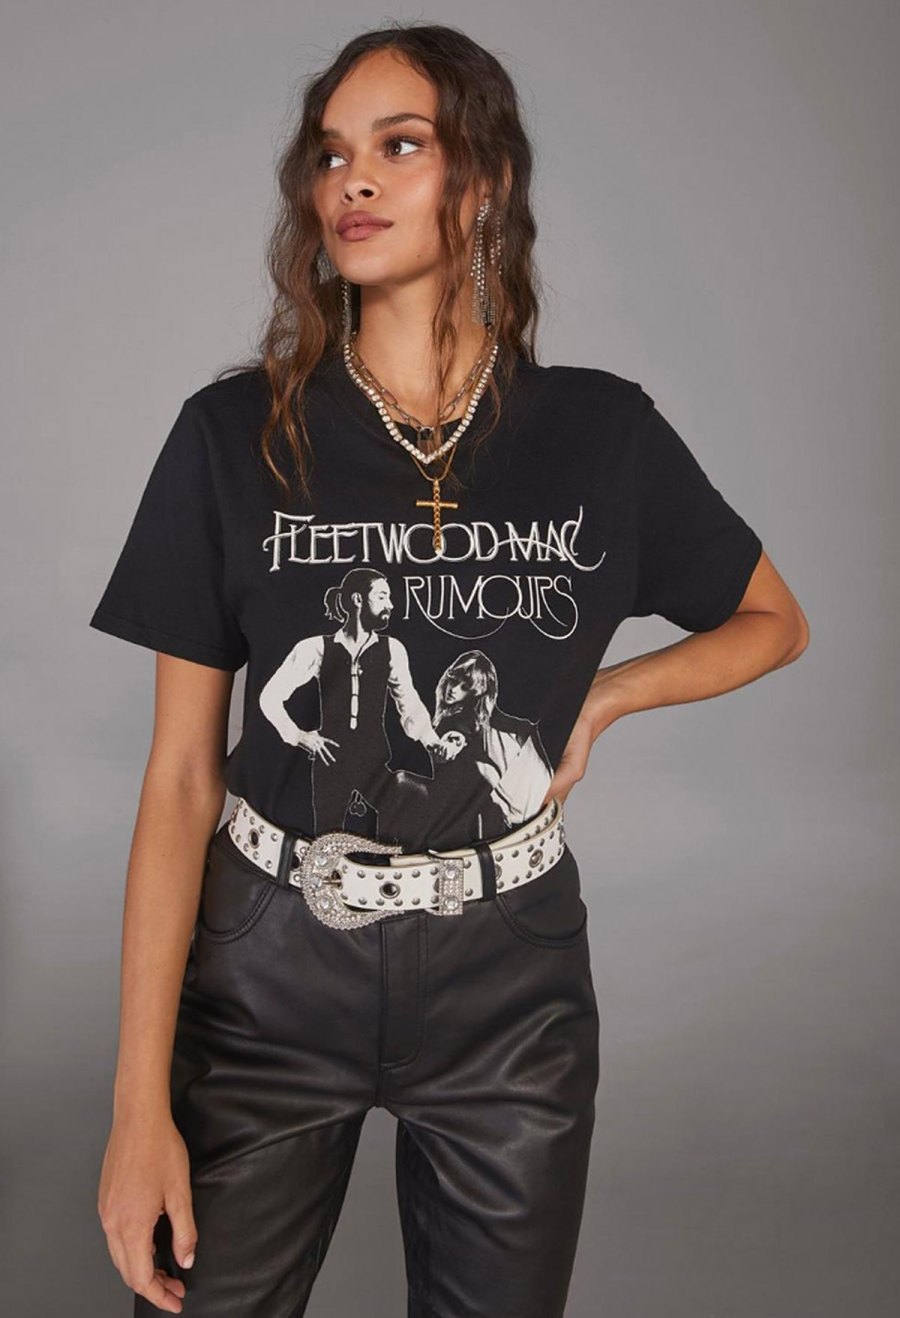 Cara Delevingne x NastyGal Holiday Collection - Fleetwood Mac Tee